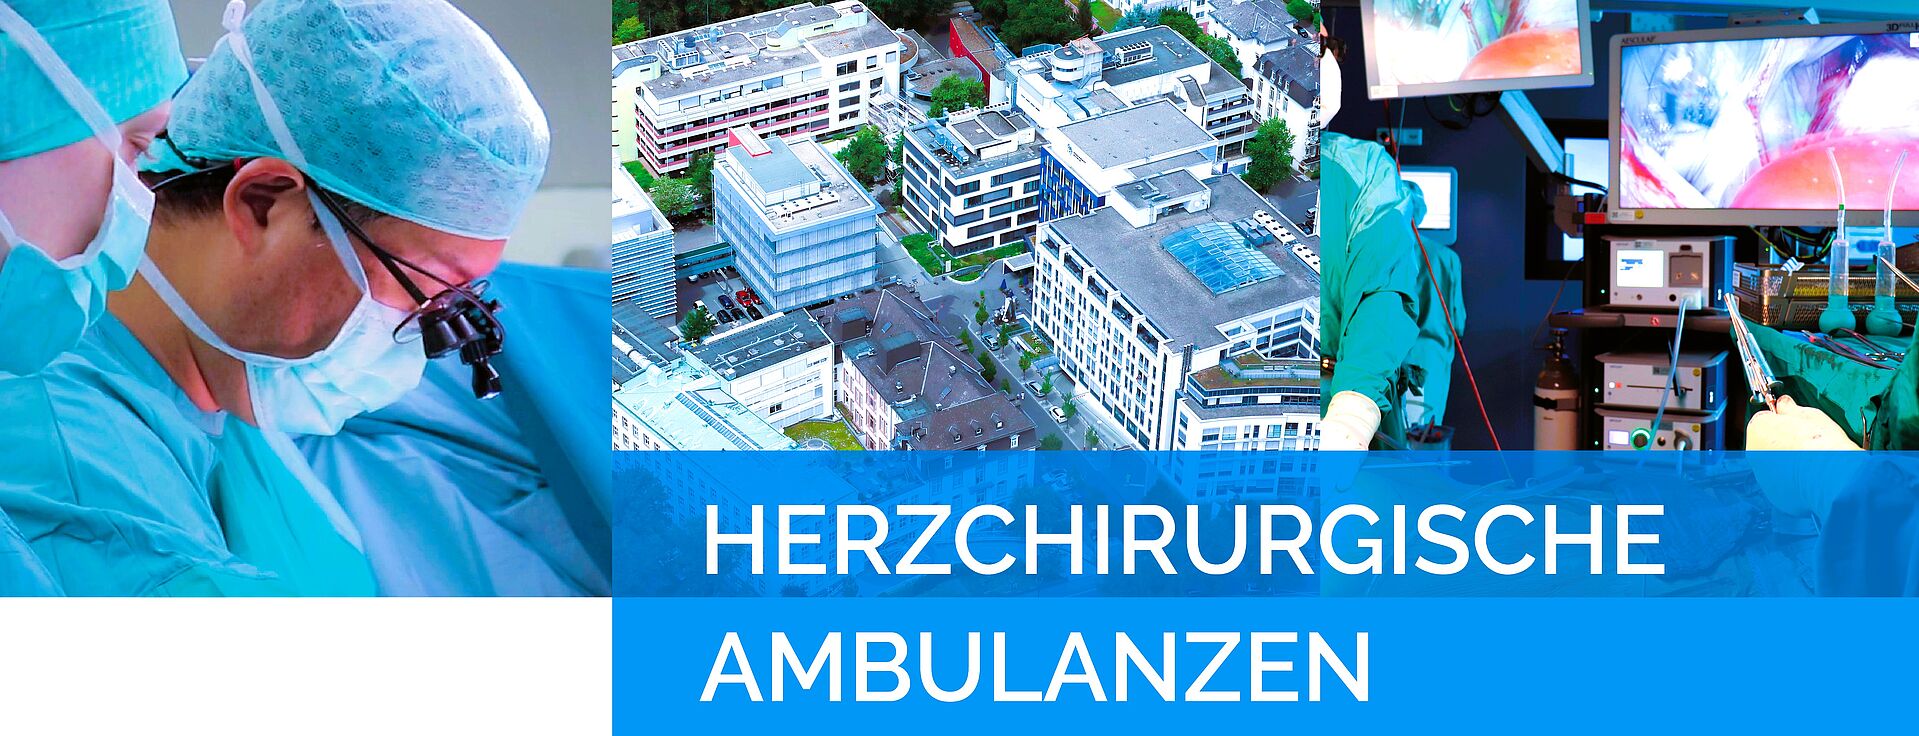 Ambulanzen in der Herzchirurgie der Kerckhoff Klinik